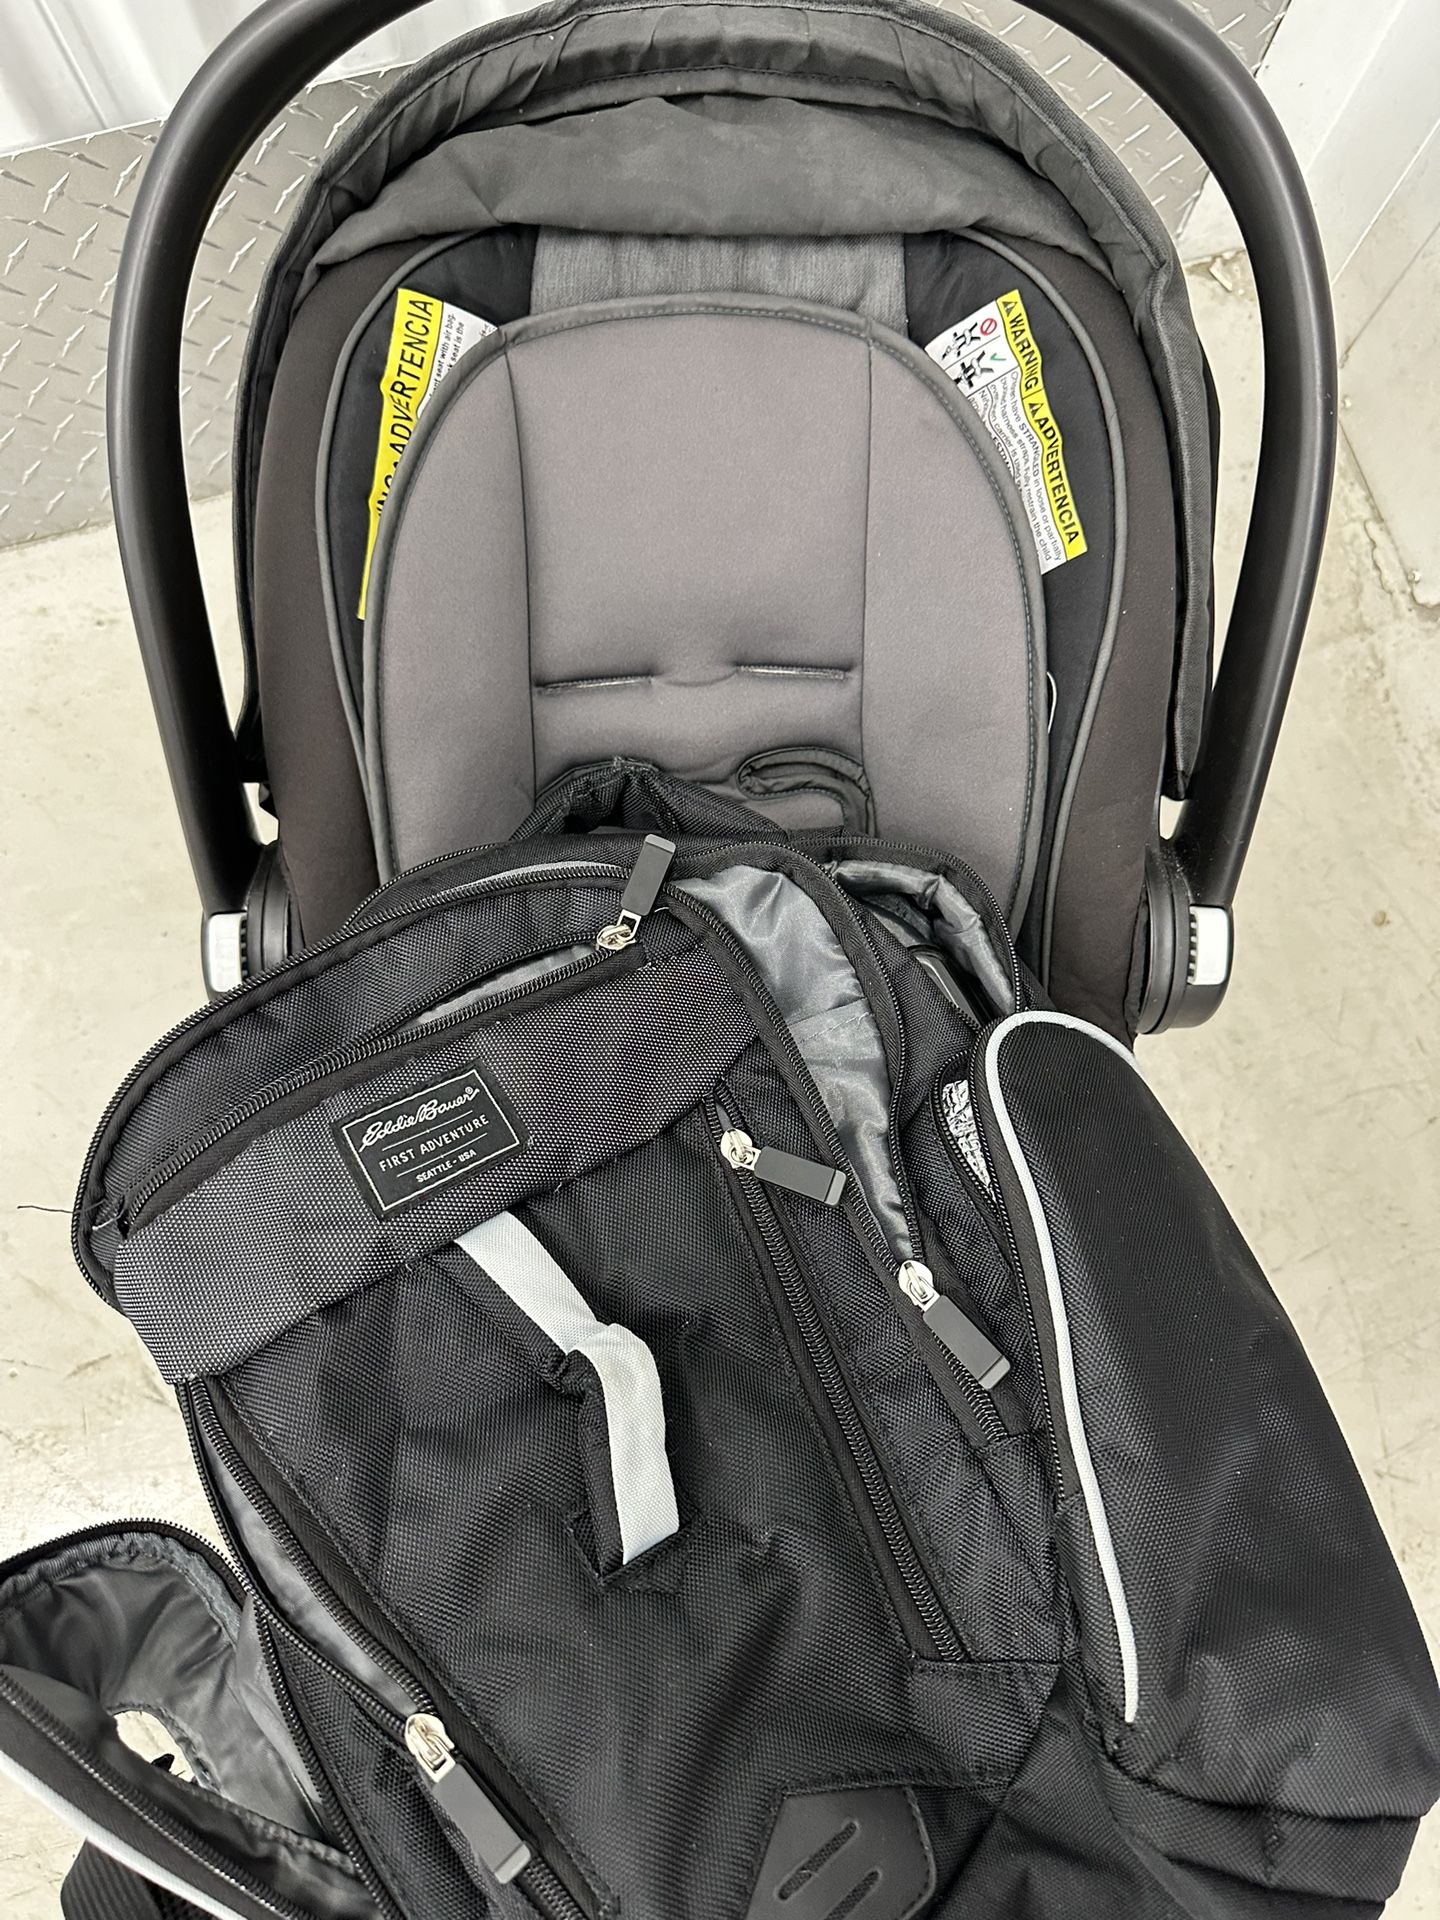 Car Seat and Diaper Bag Backpack 